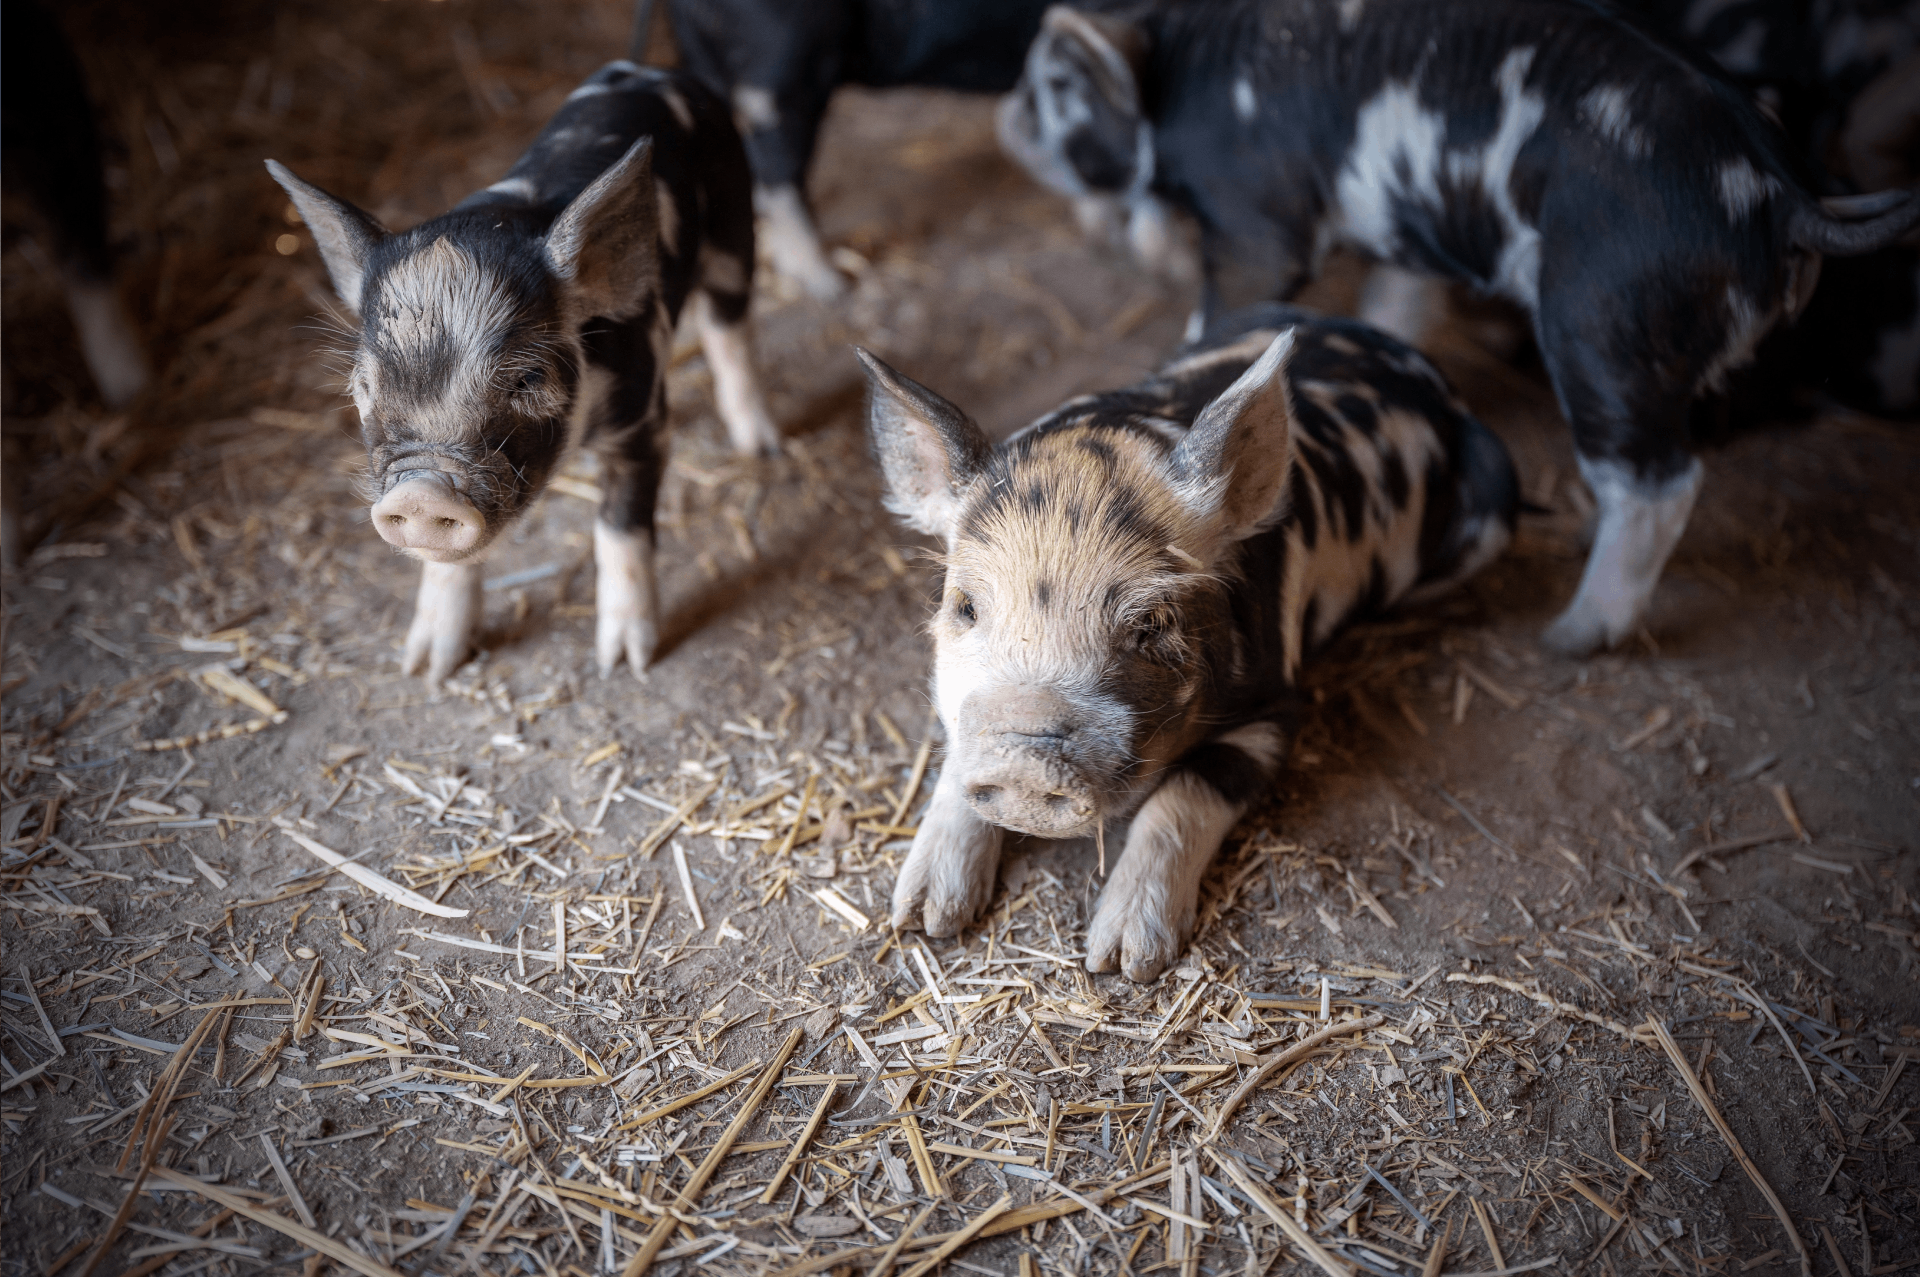 能繁母猪基础保有量降至3900万头！对市场有何影响？猪价会因此大涨吗？